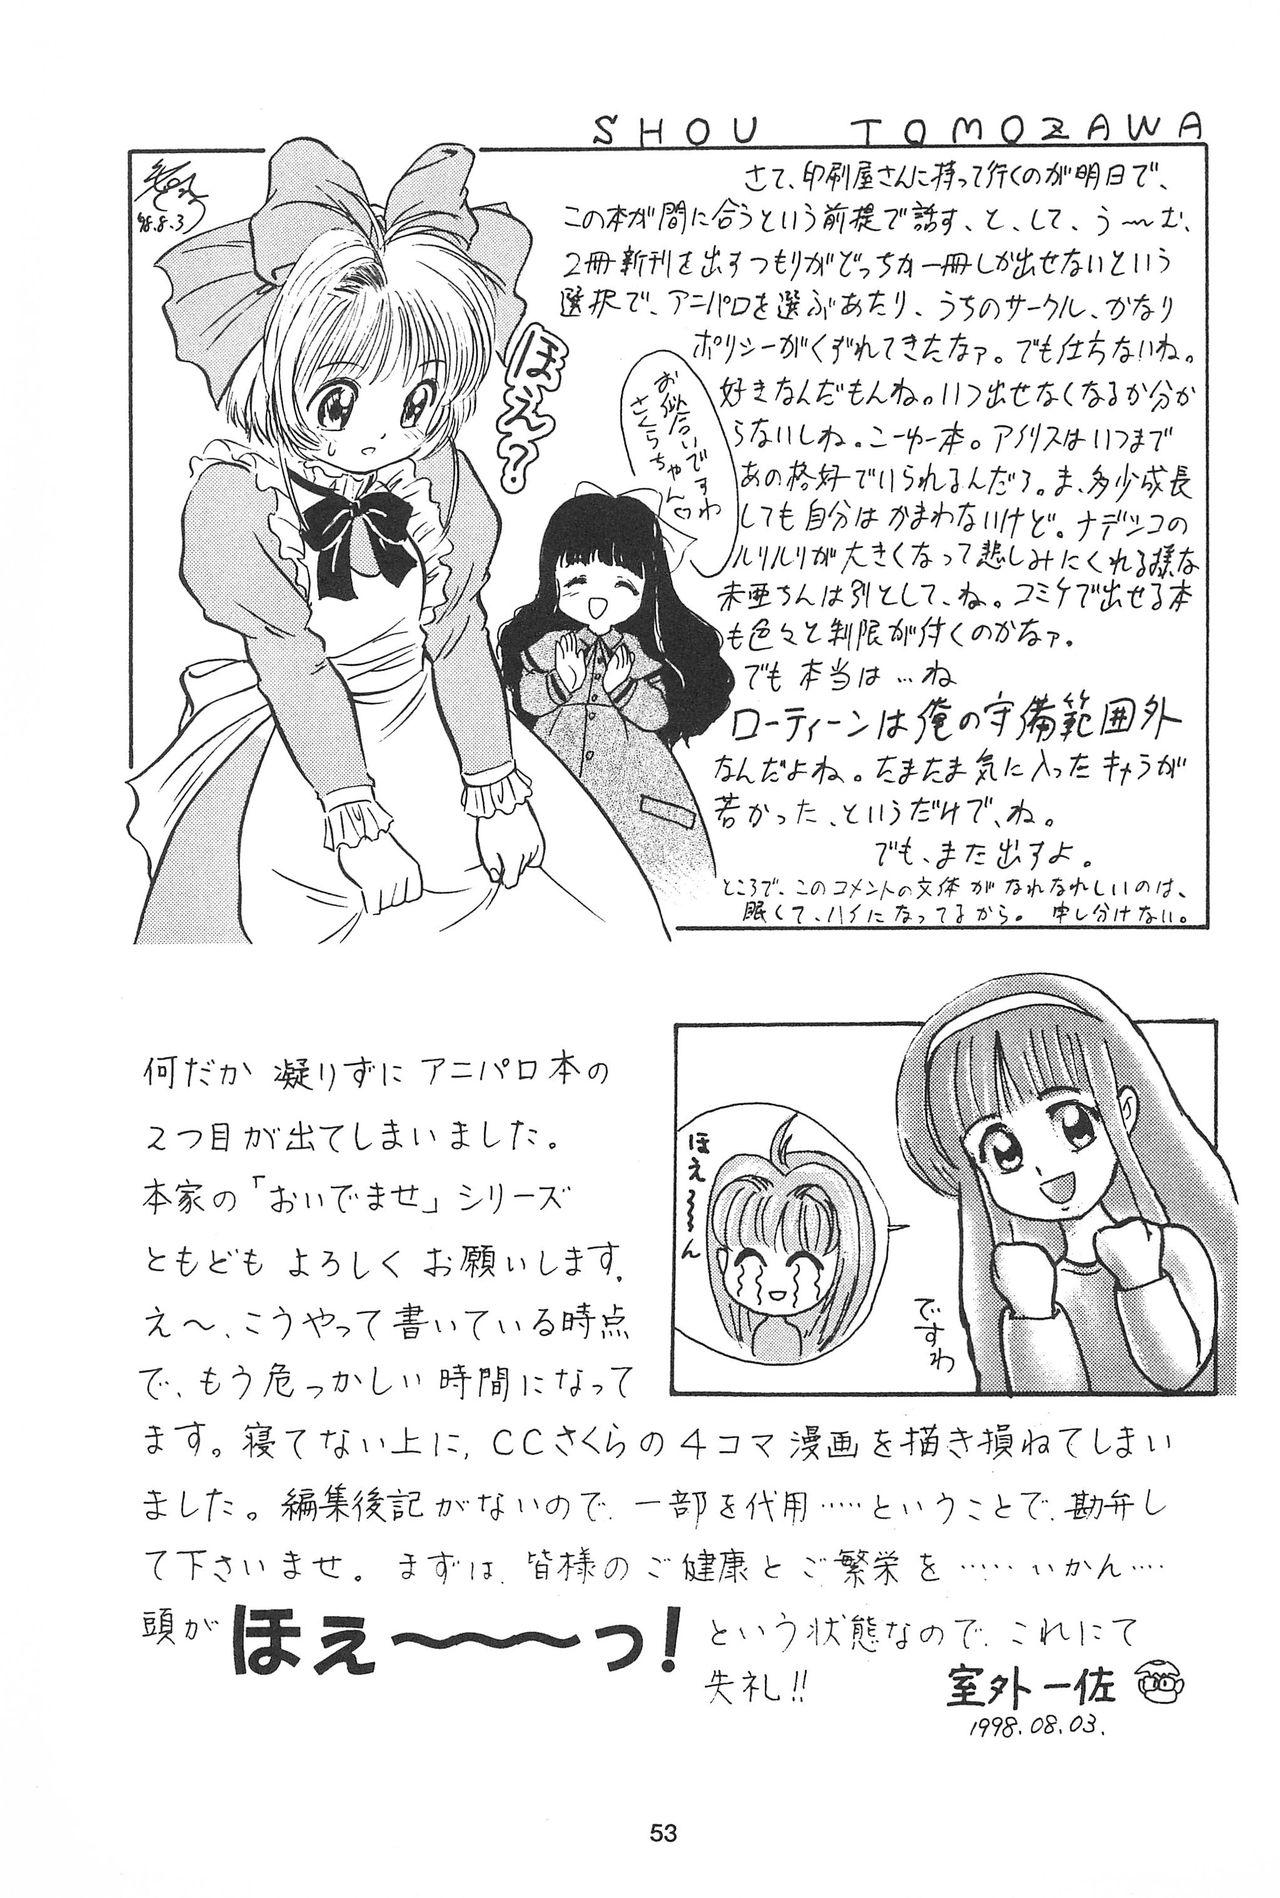 Sakura ja Nai Moon!! Character Voice Tange Sakura 52